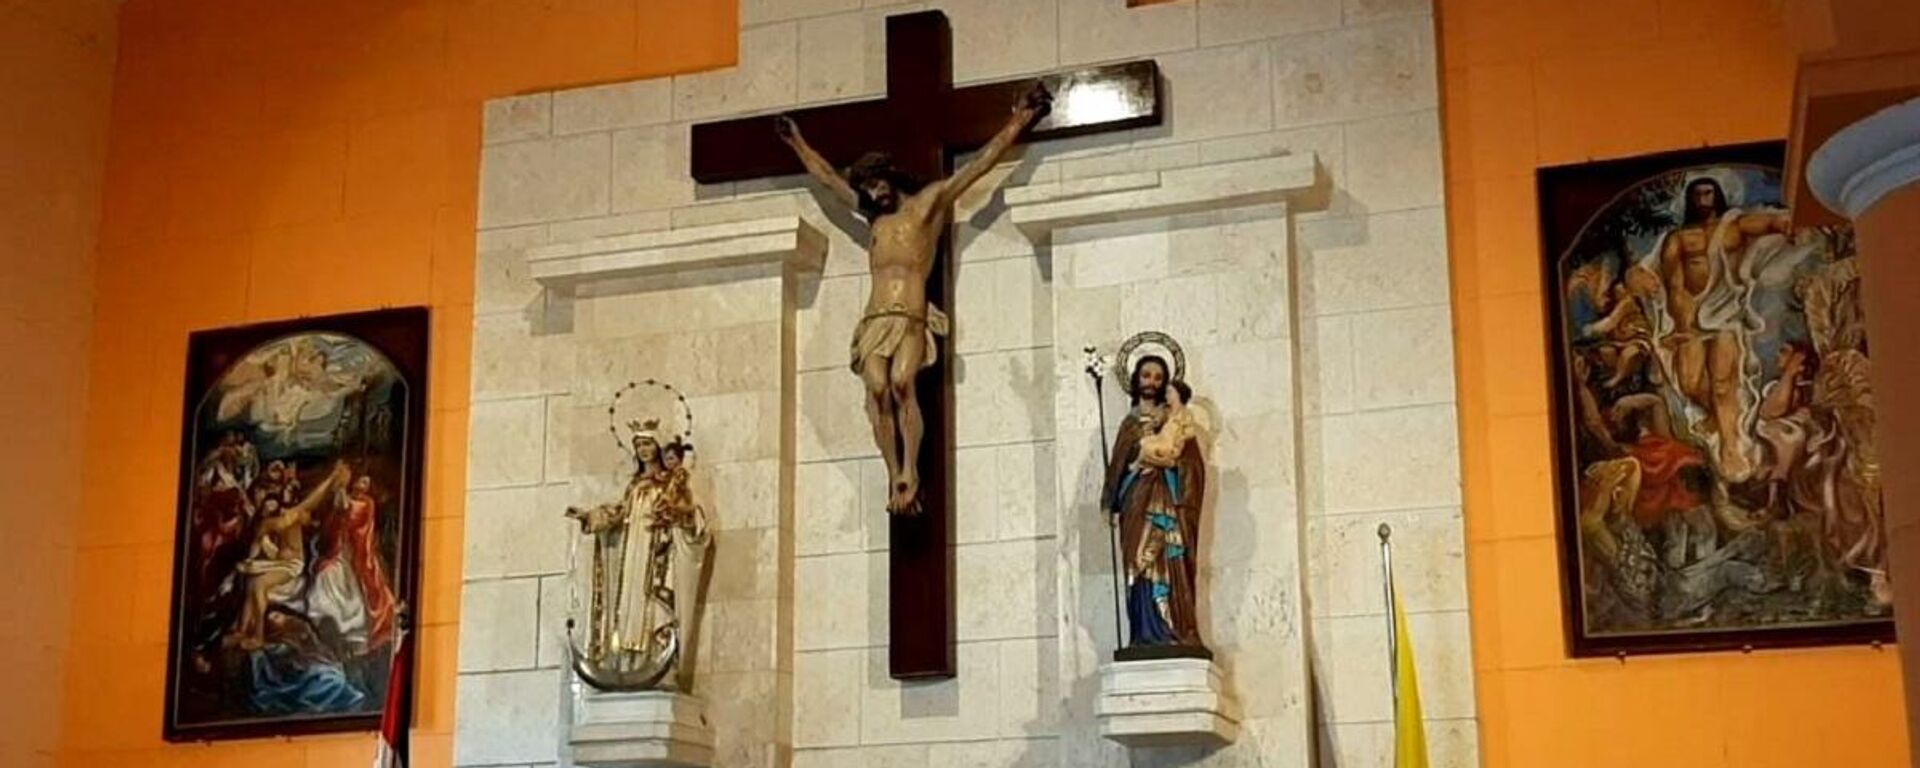 Interior de una iglesia católica en Cuba, los cuadros situados a ambos lados de la cruz corresponden al pintor cubano Mariano Rodríguez - Sputnik Mundo, 1920, 22.02.2021